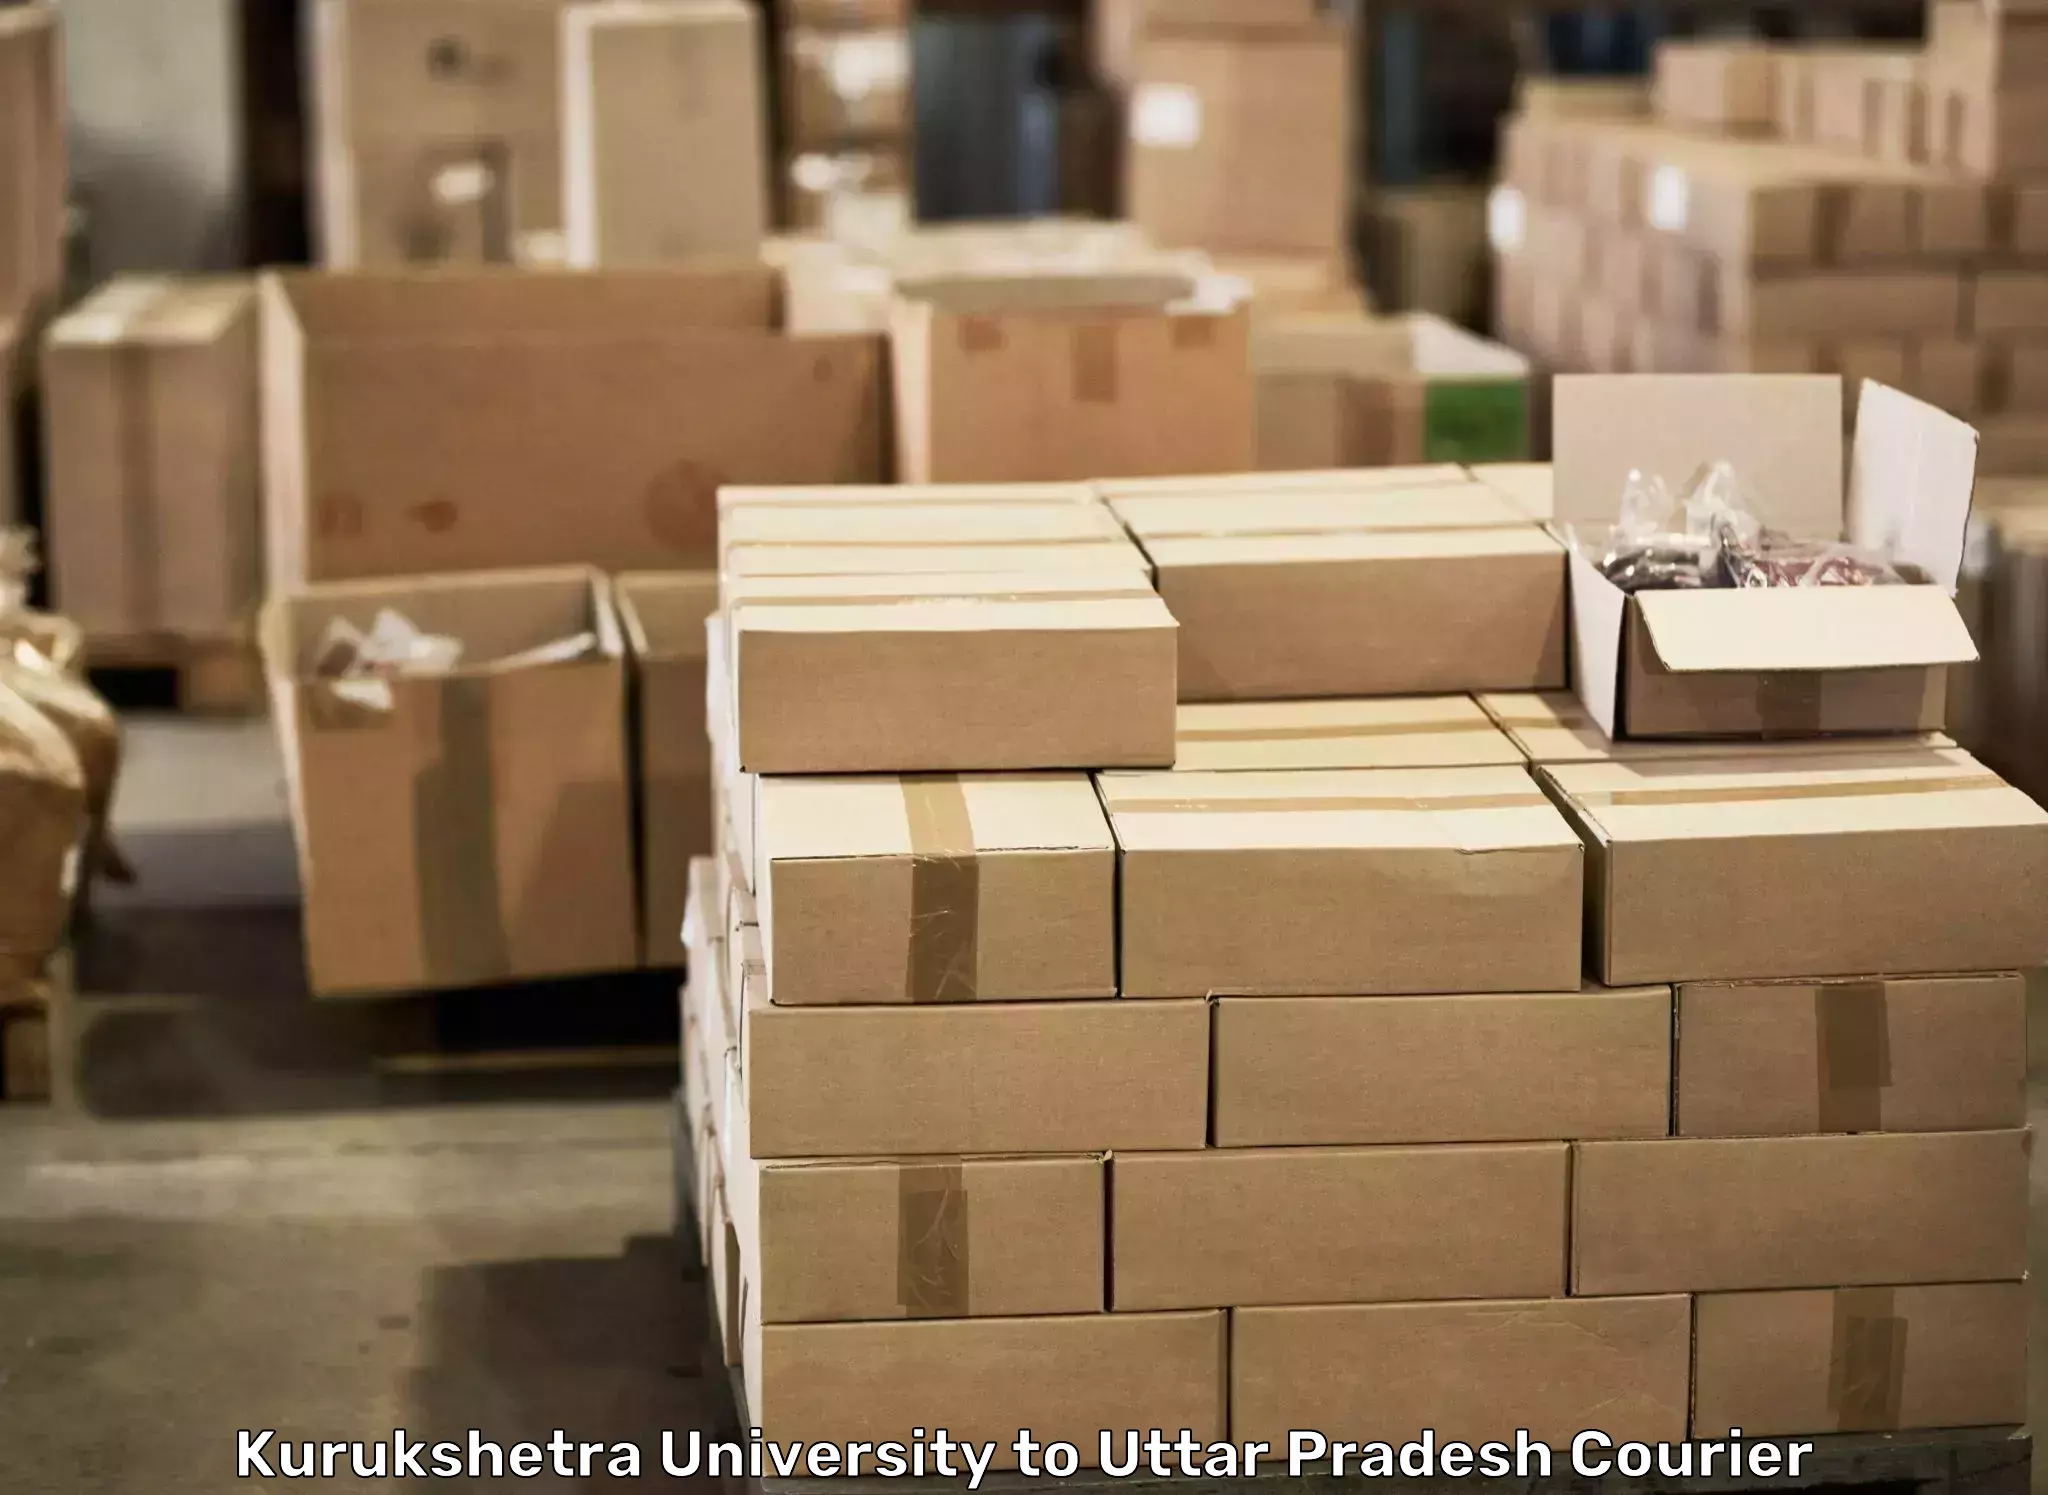 Furniture transport and logistics in Kurukshetra University to Lalganj Raebareli